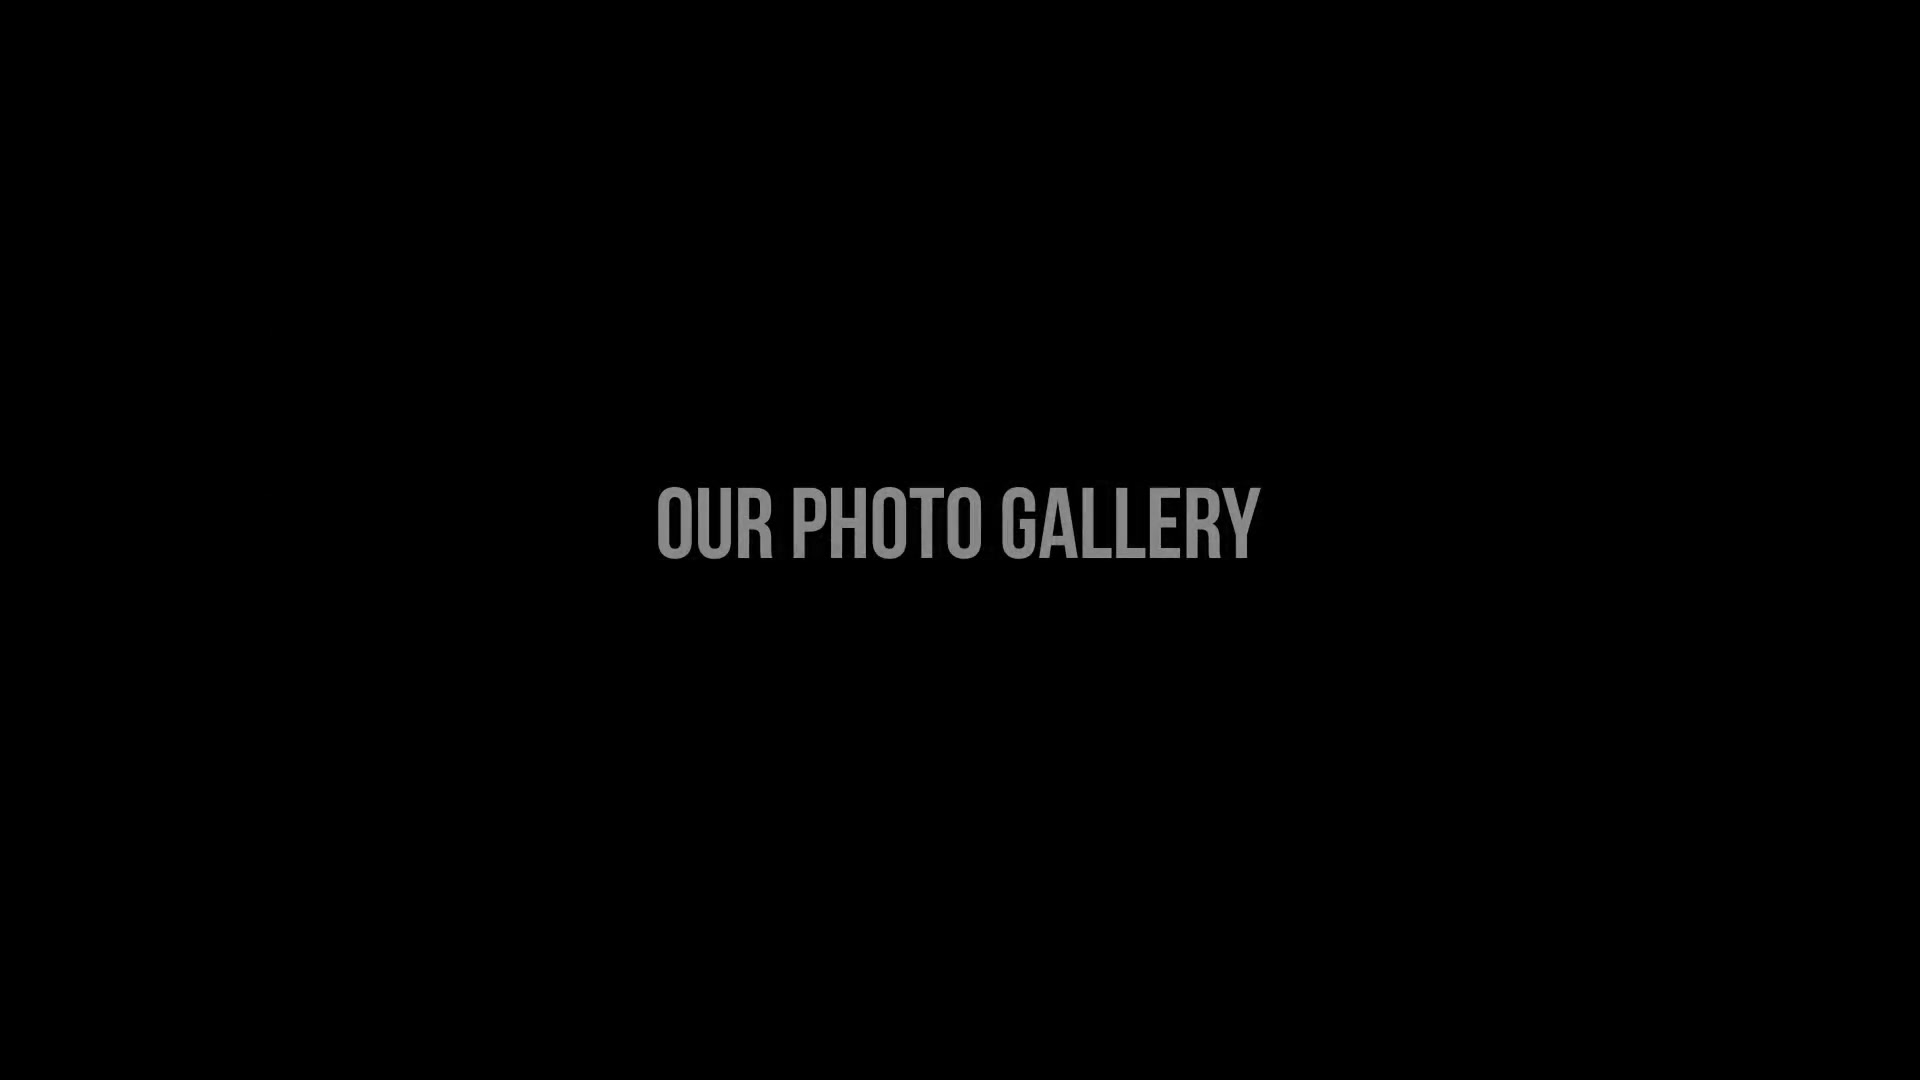 Elegant Photo Gallery Premiere Pro Videohive 41973644 Premiere Pro Image 10